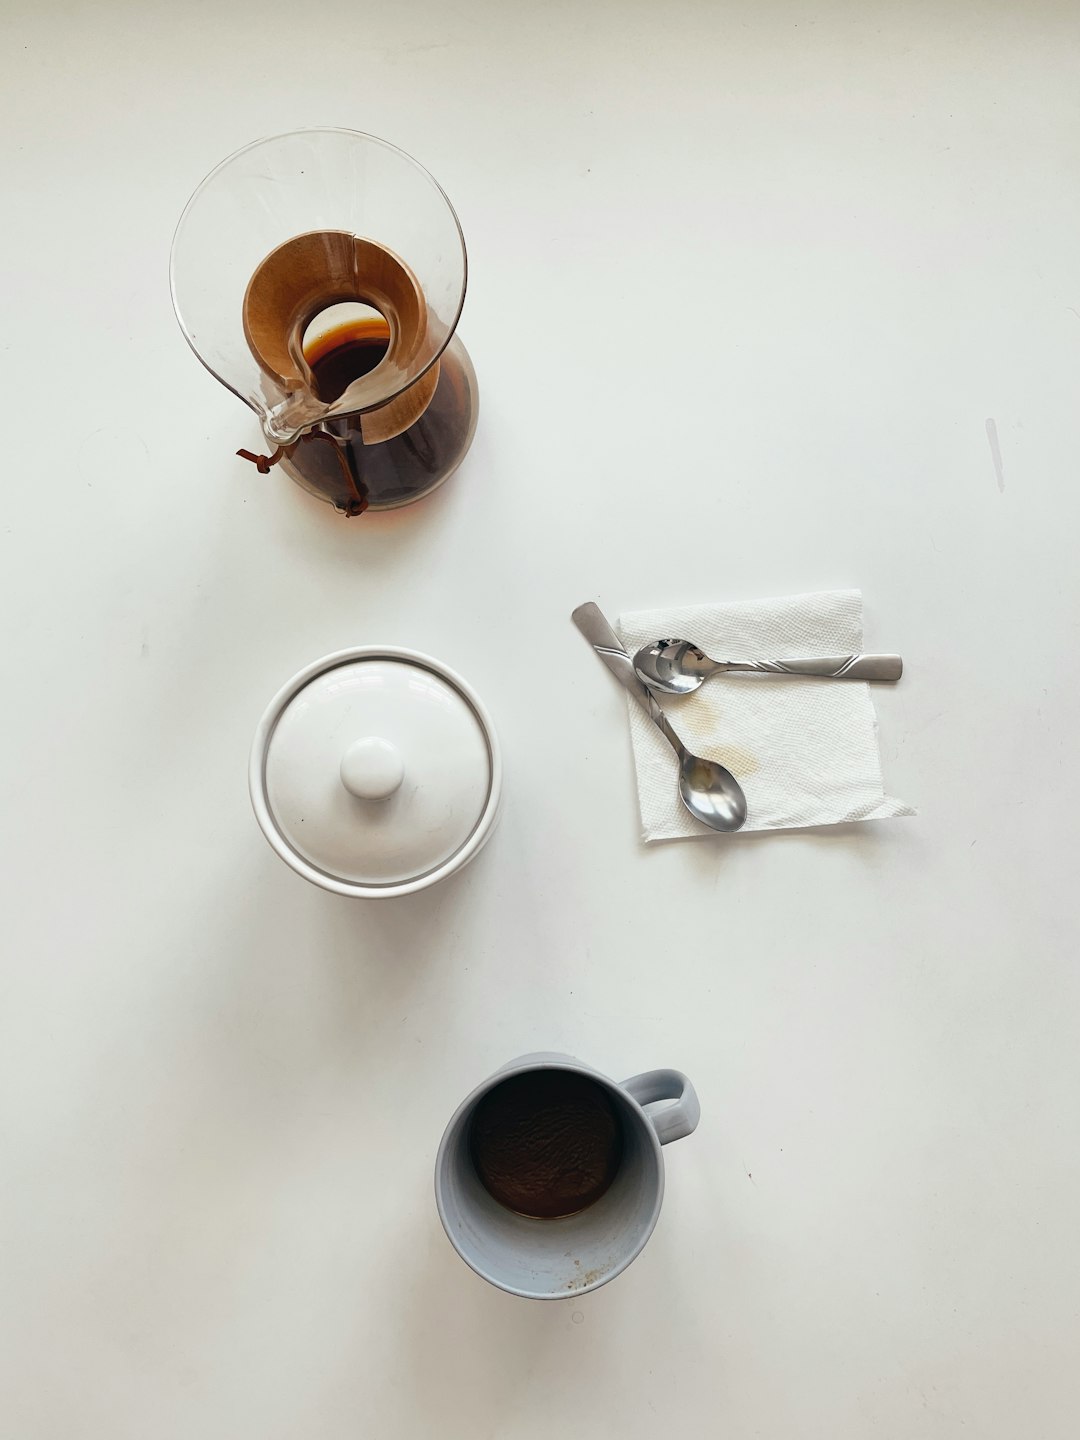 white ceramic mug beside stainless steel scissors